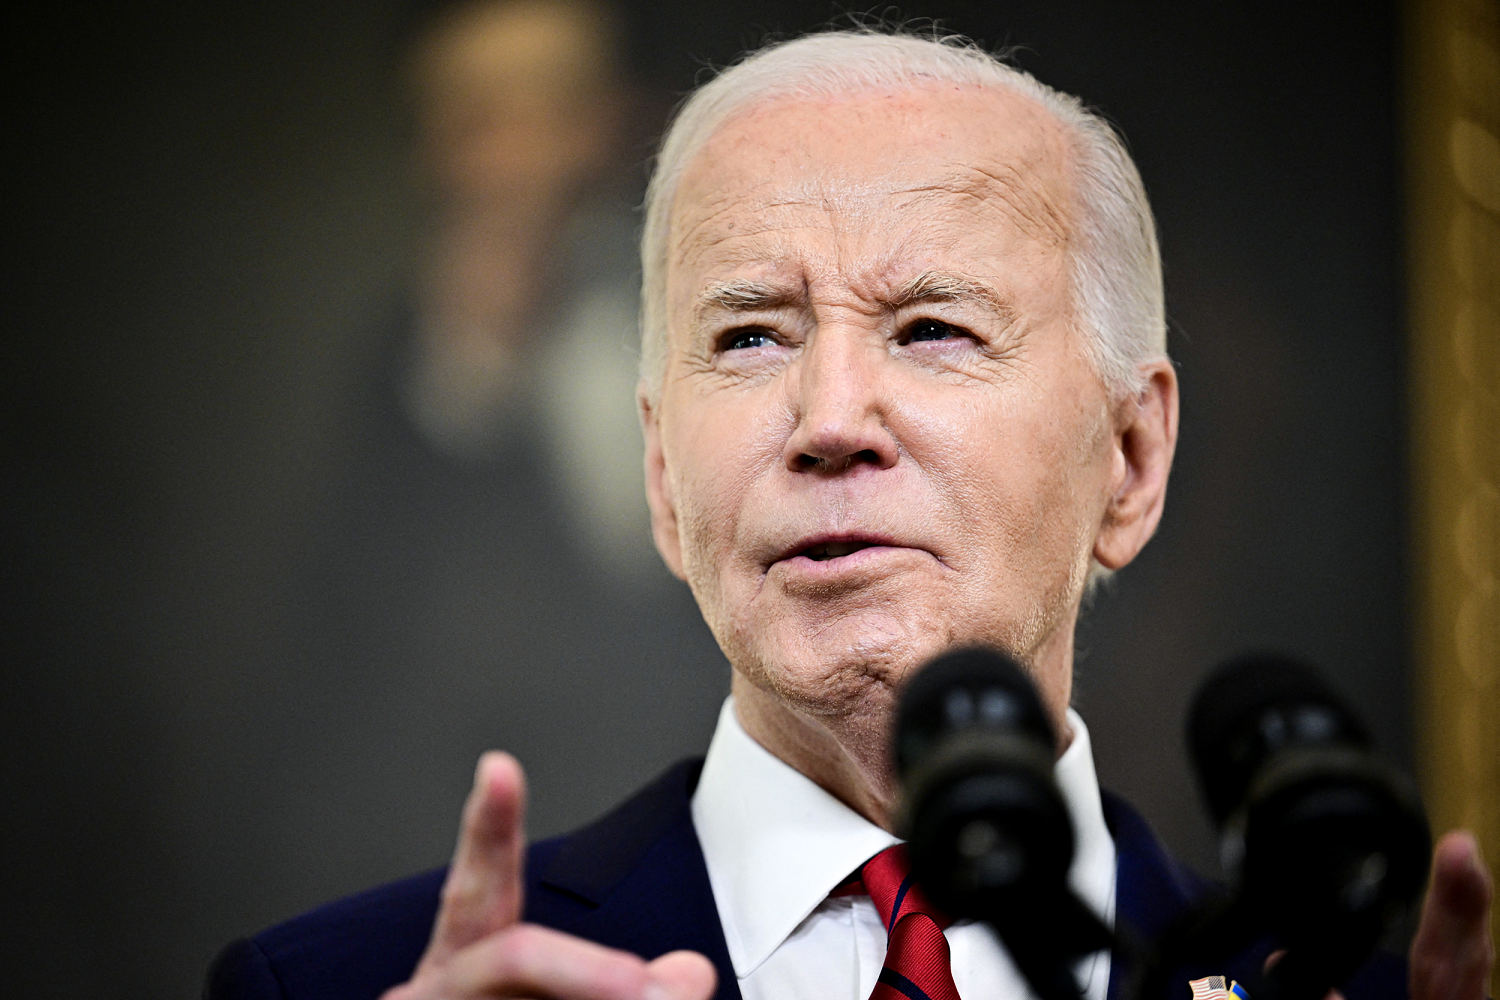 Biden campaign plans to keep using TikTok through the election